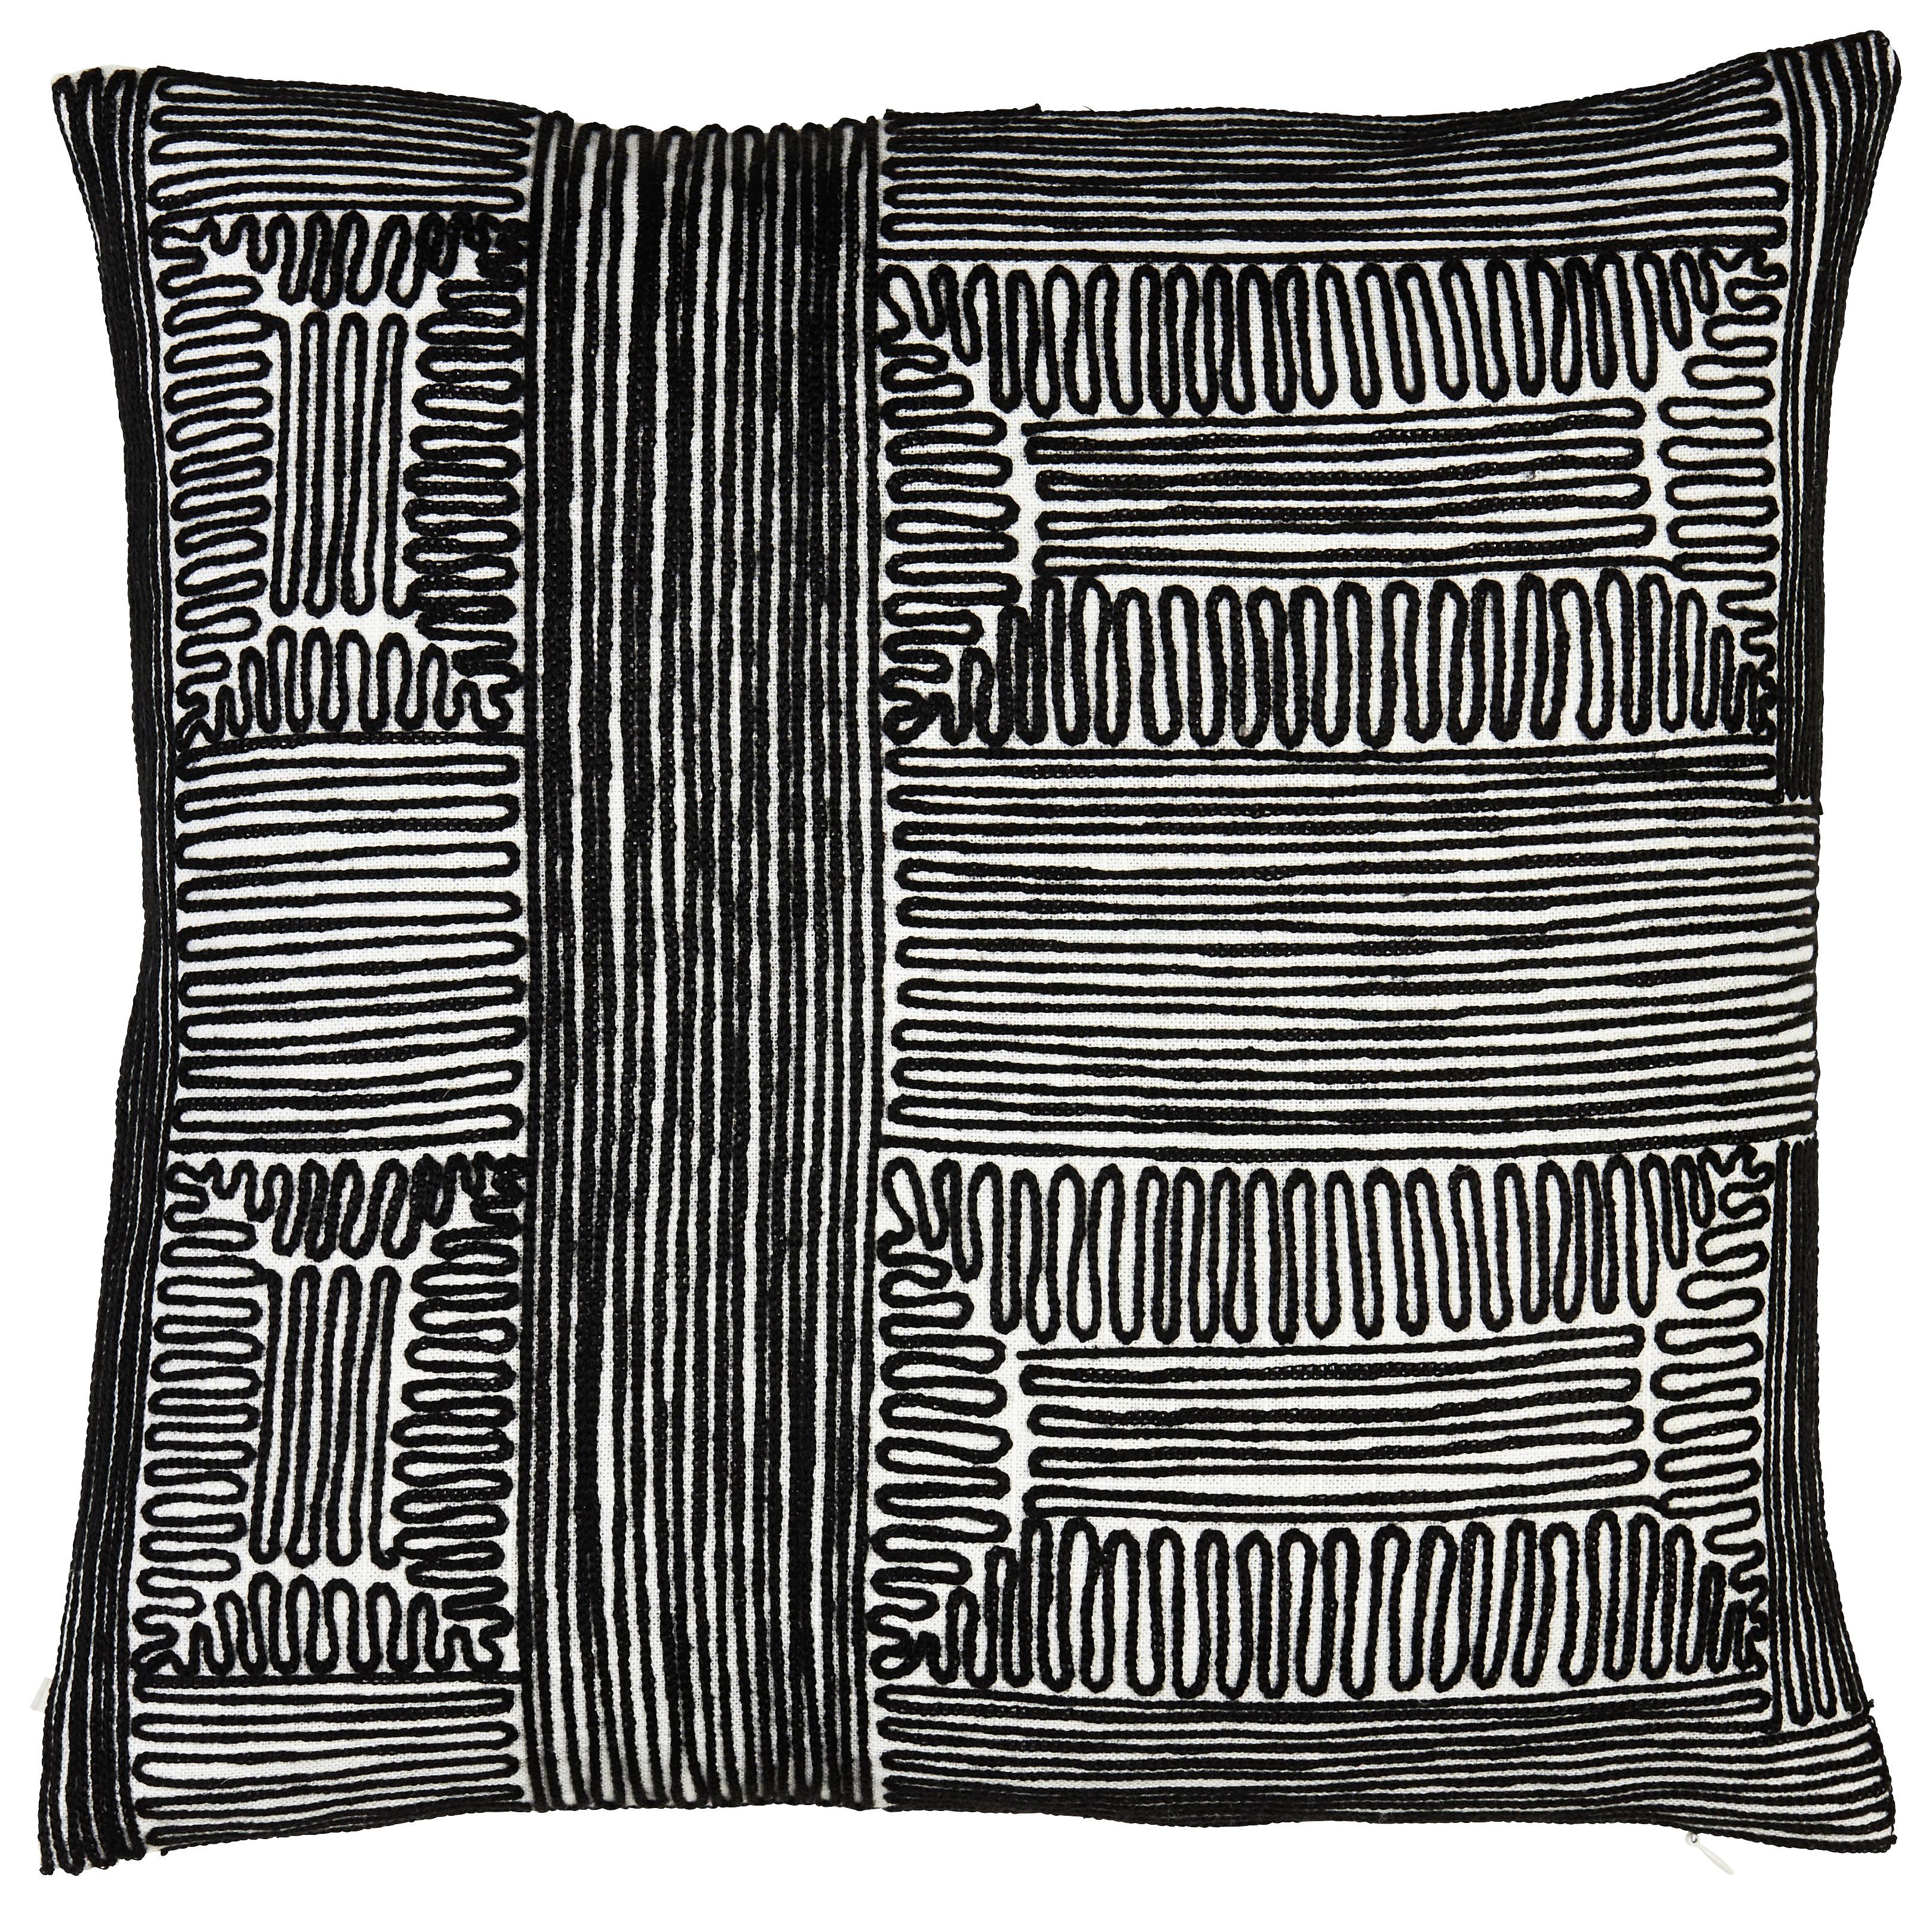 Dekorační Polštář Agadir, 45/45cm, Bílá, Černá - bílá/černá, Lifestyle, textil (45/45cm) - Modern Living